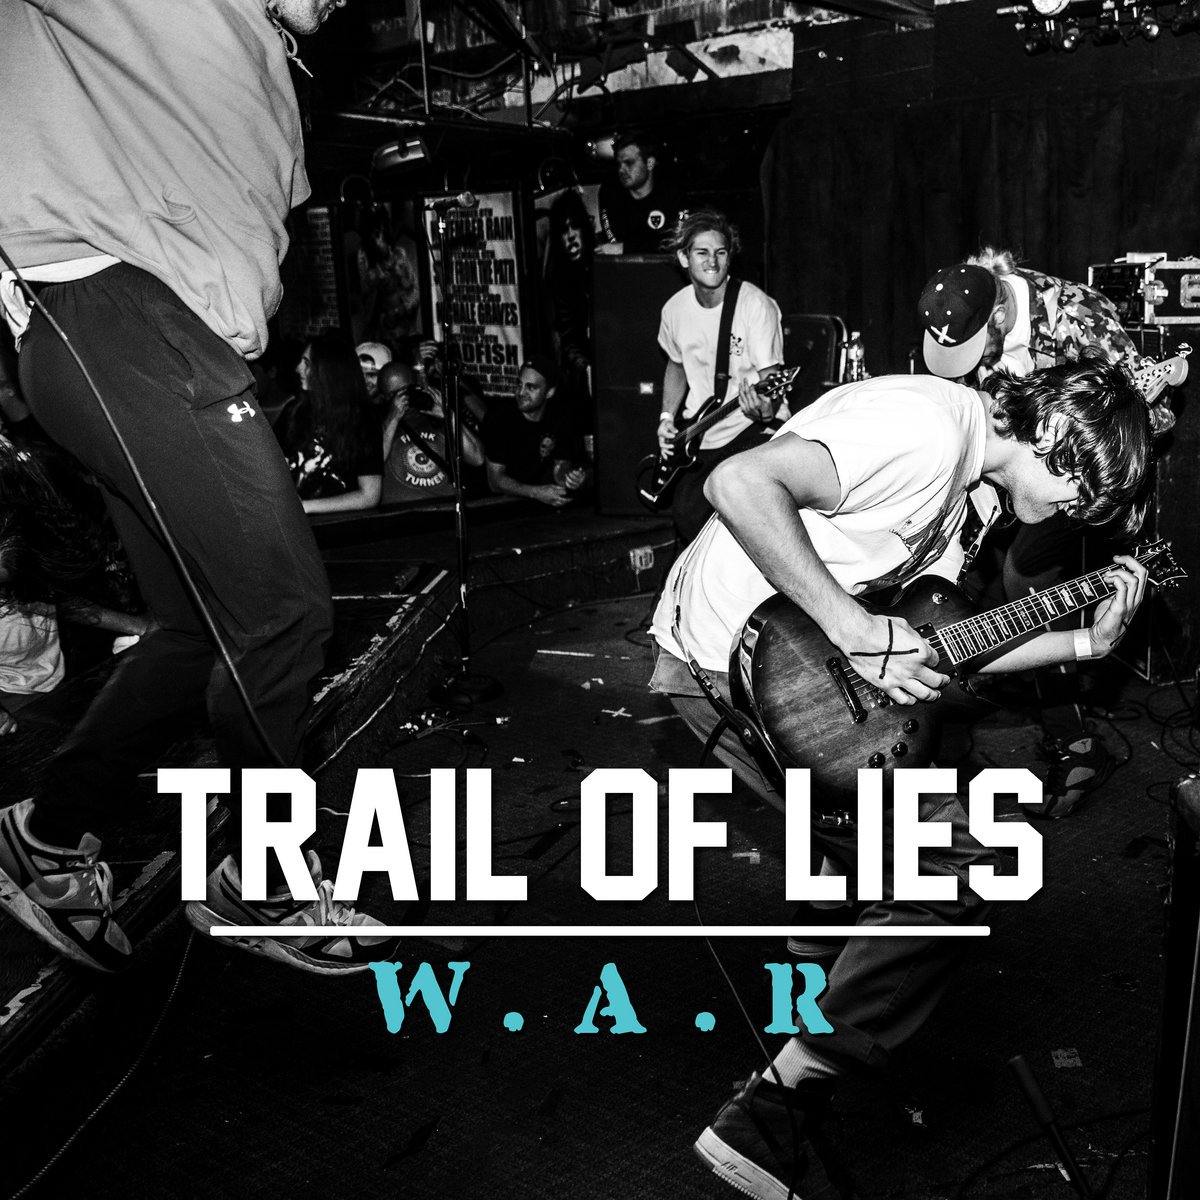 Buy – Trail of Lies "W.A.R." 12" – Band & Music Merch – Cold Cuts Merch